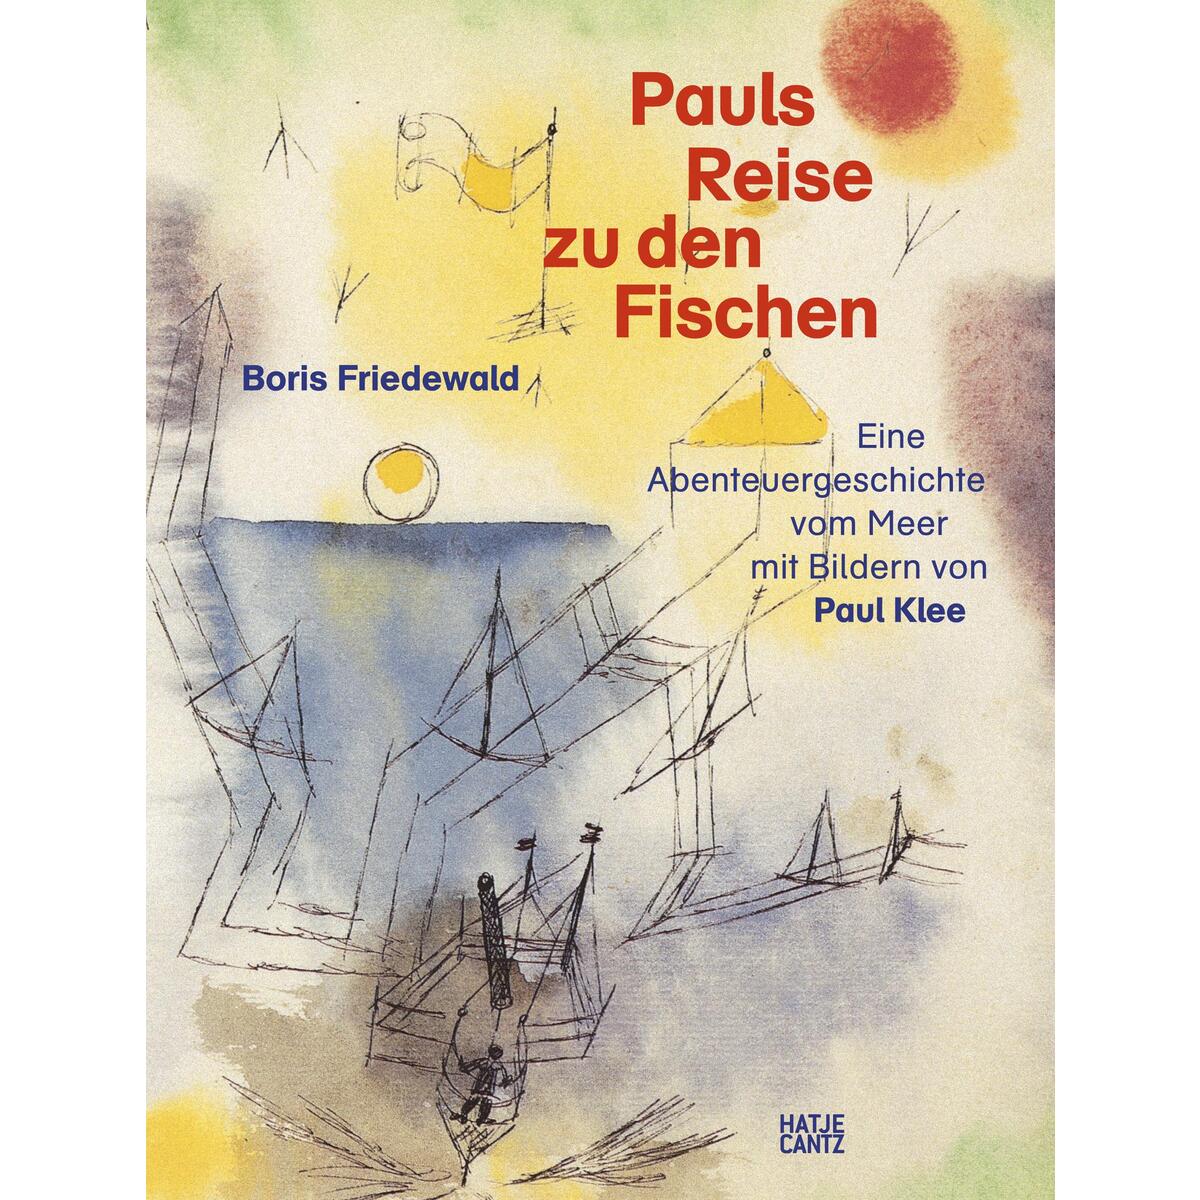 Pauls Reise zu den Fischen von Hatje Cantz Verlag GmbH